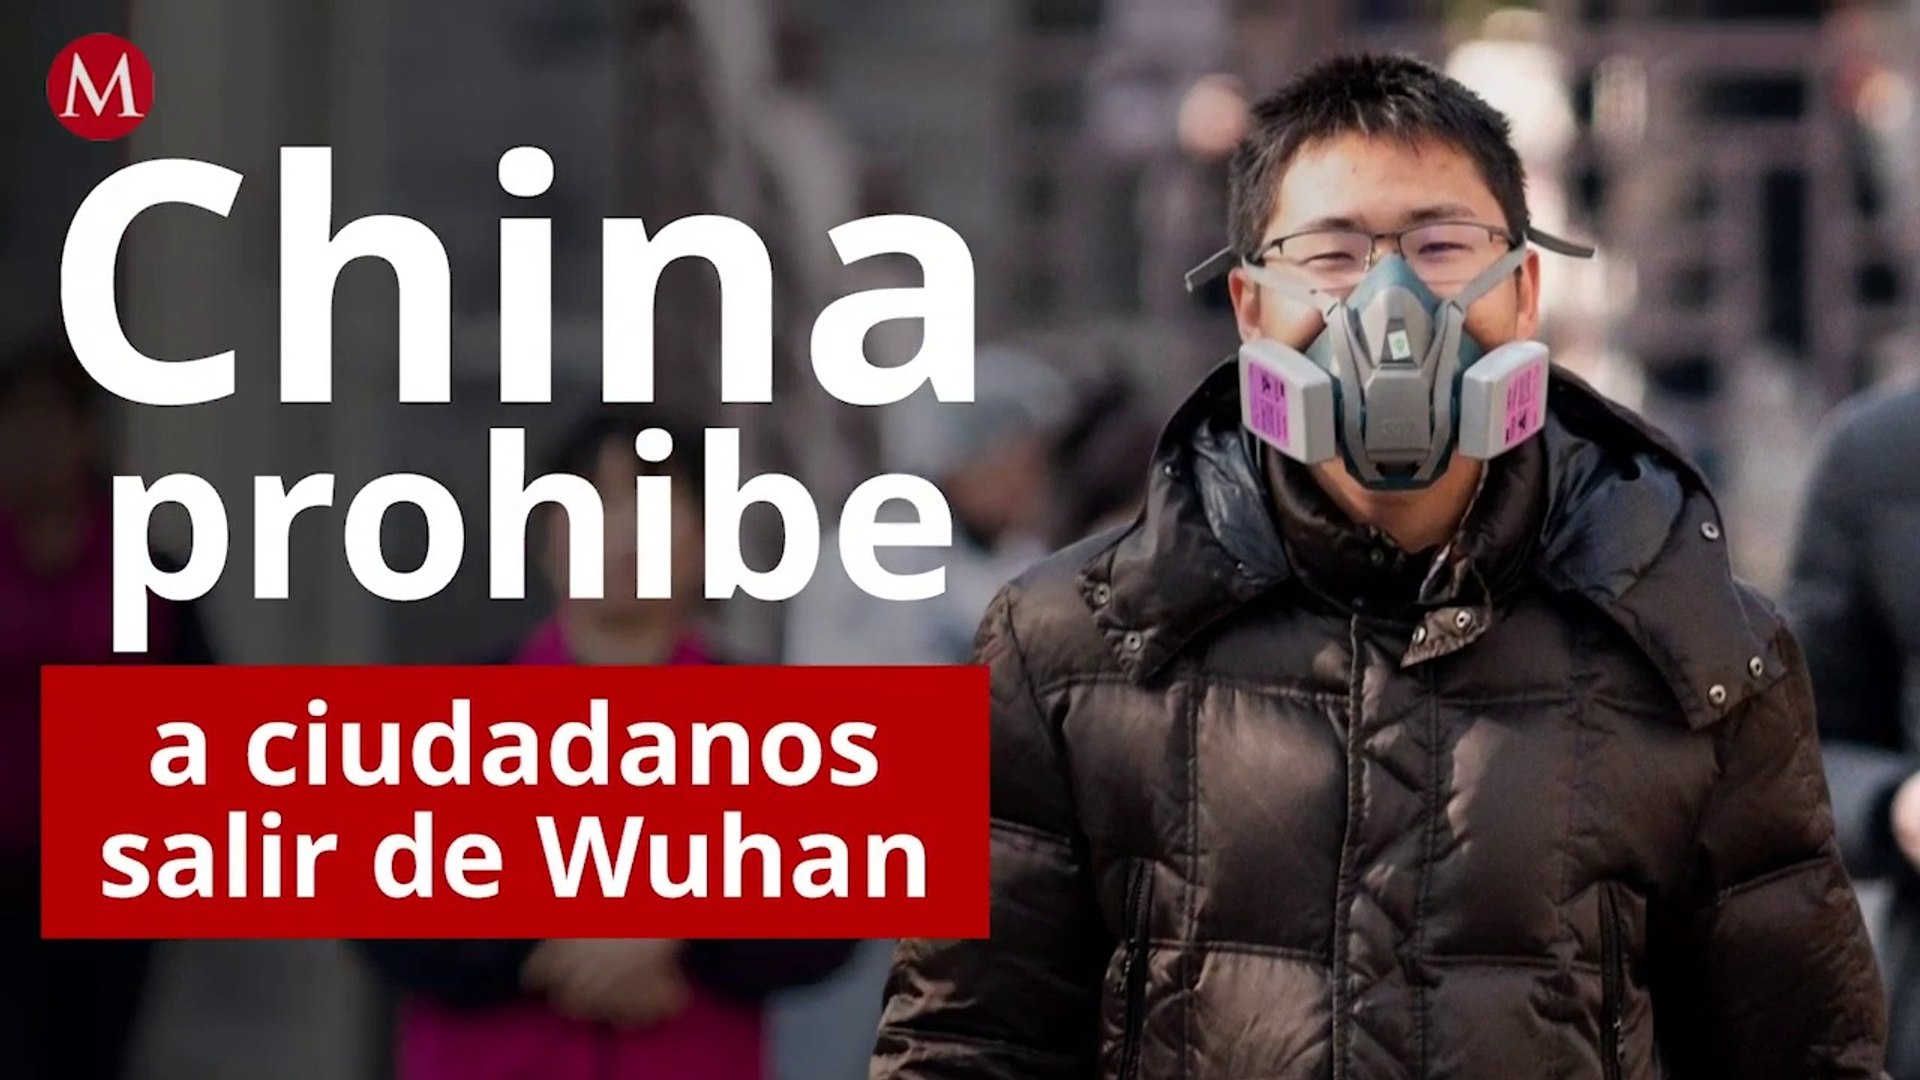 Por coronavirus, China prohíbe a ciudadanos salir de Wuhan